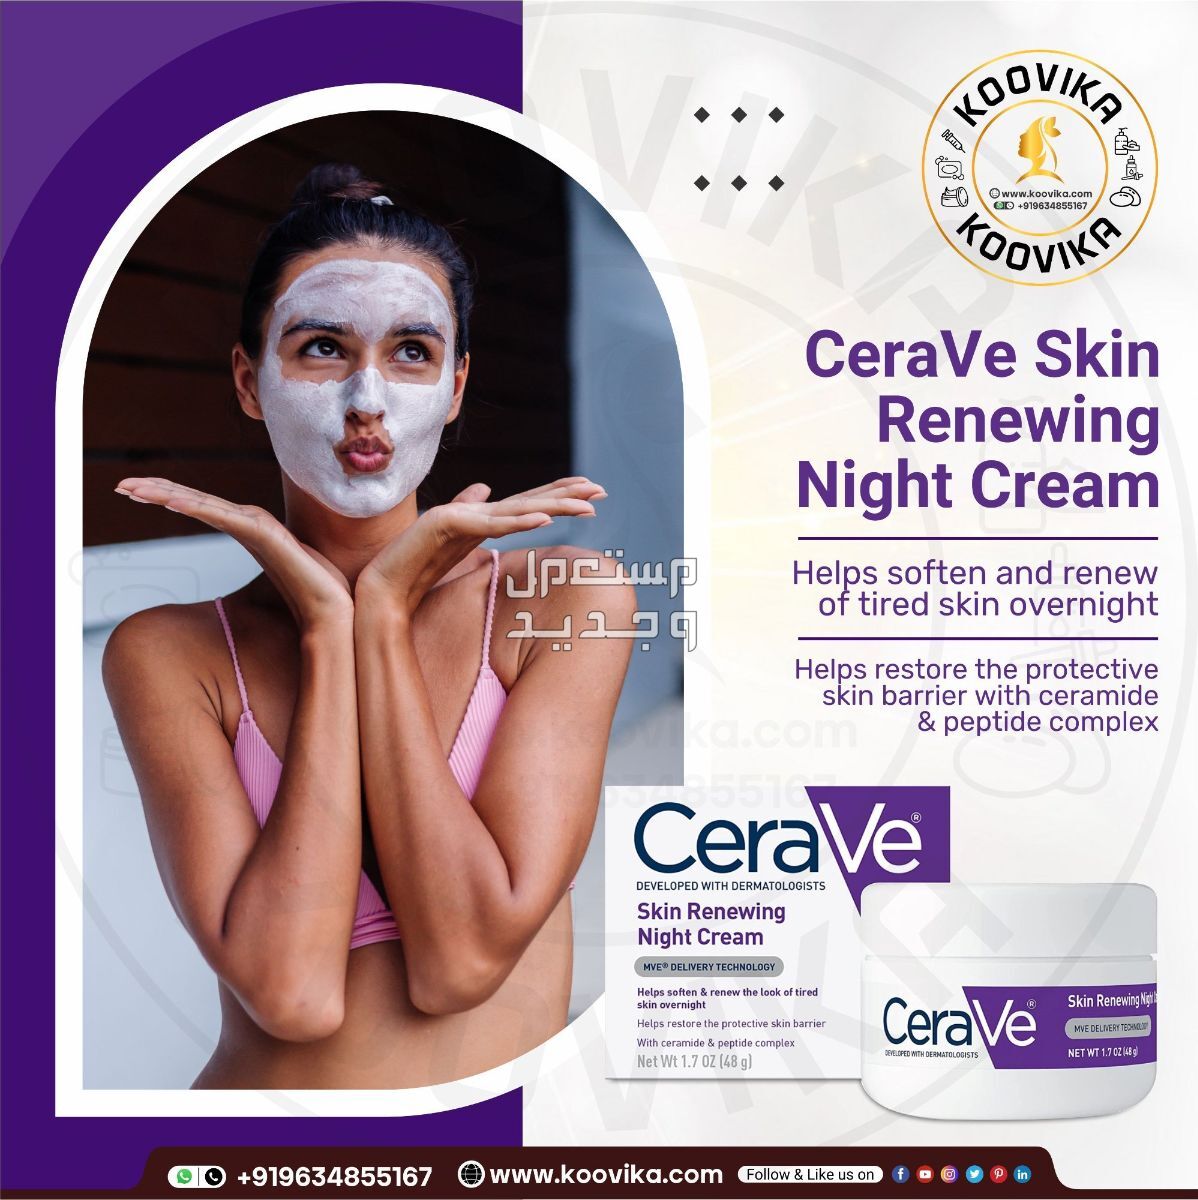 أفضل كريم ليلي للعناية بالبشرة لعام 2023 في تونس شكل كريم ليلي من CeraVe Skin Renewing Night Cream على البشرة